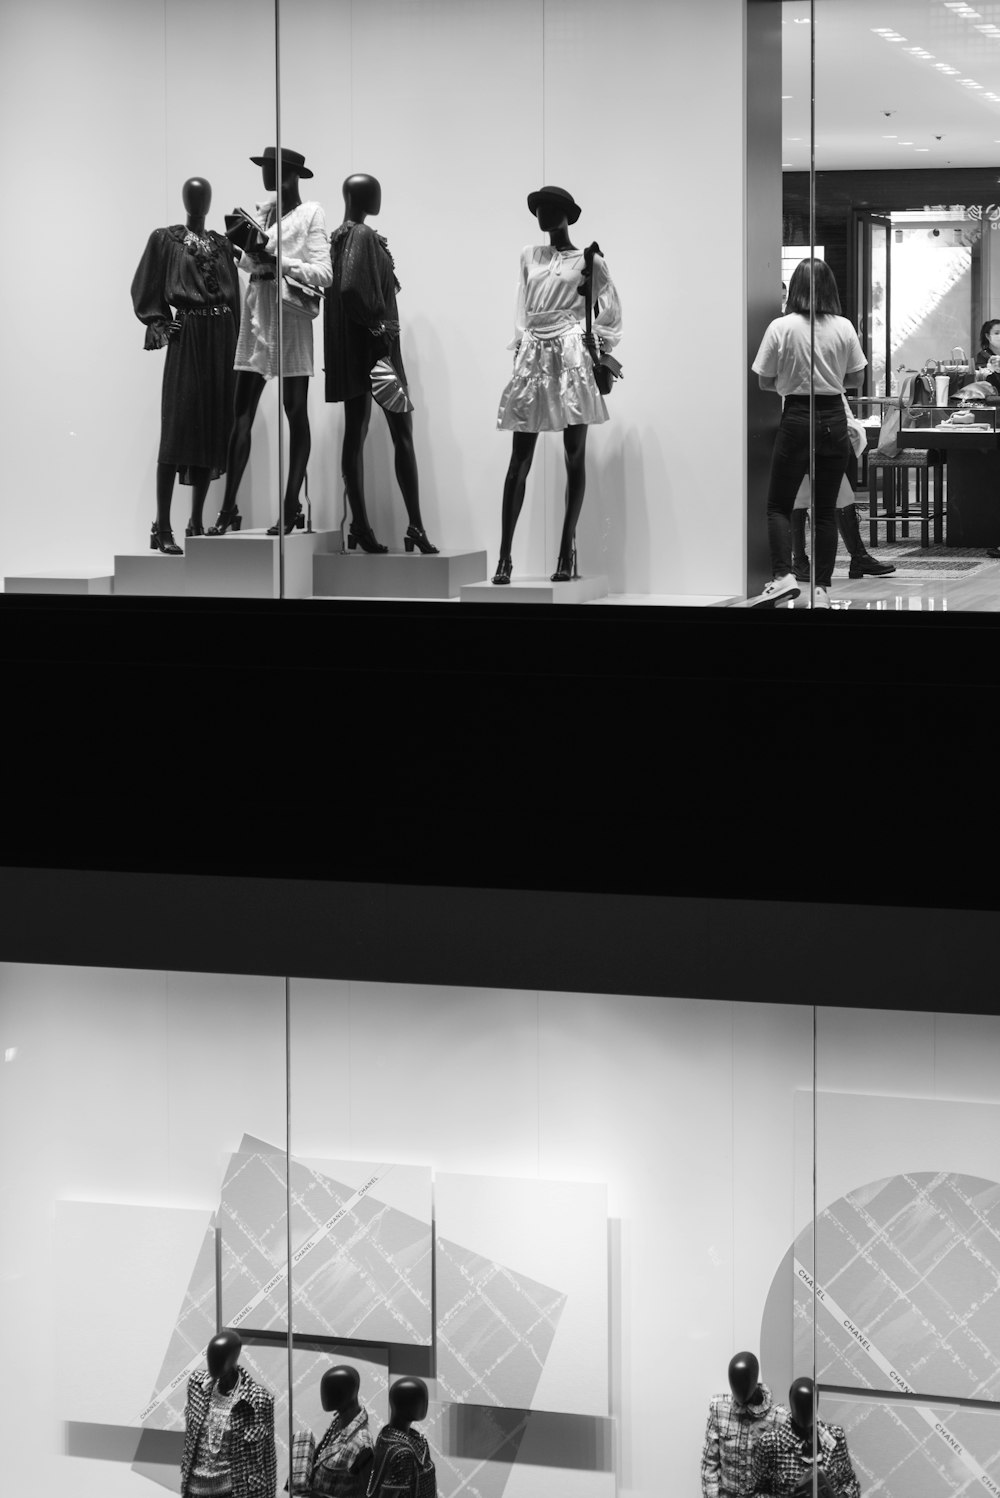 Photo en niveaux de gris d’une femme en robe noire debout devant un miroir